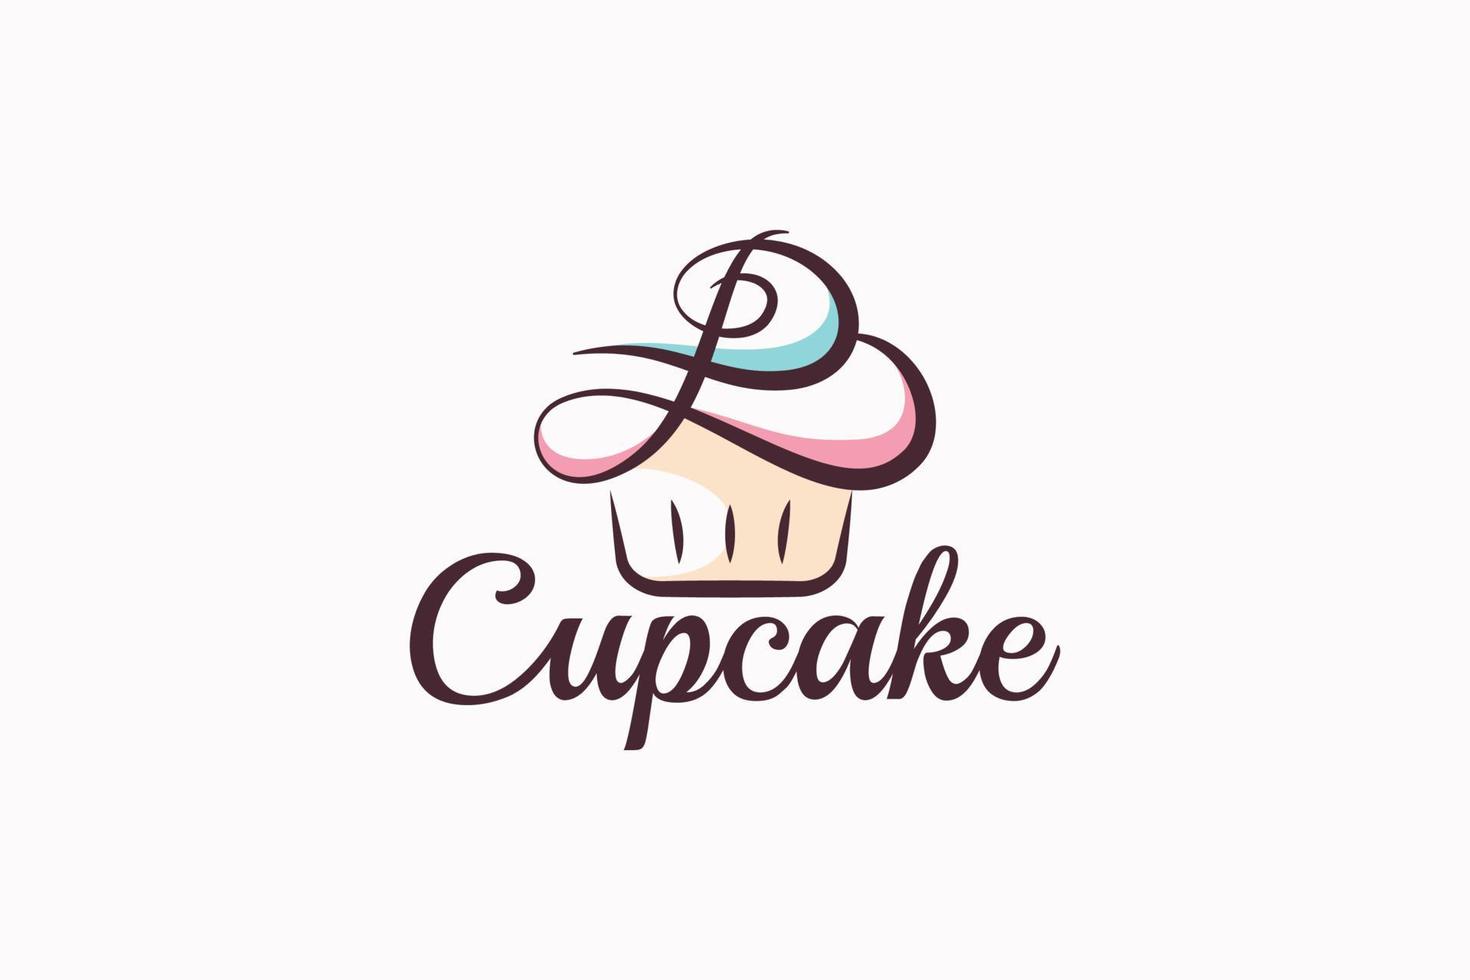 b Cupcake Logo mit ein Kombination von Stylist Cupcake und Brief b zum irgendein Geschäft, insbesondere zum Bäckereien, Konditoreien, Cafe, usw. vektor